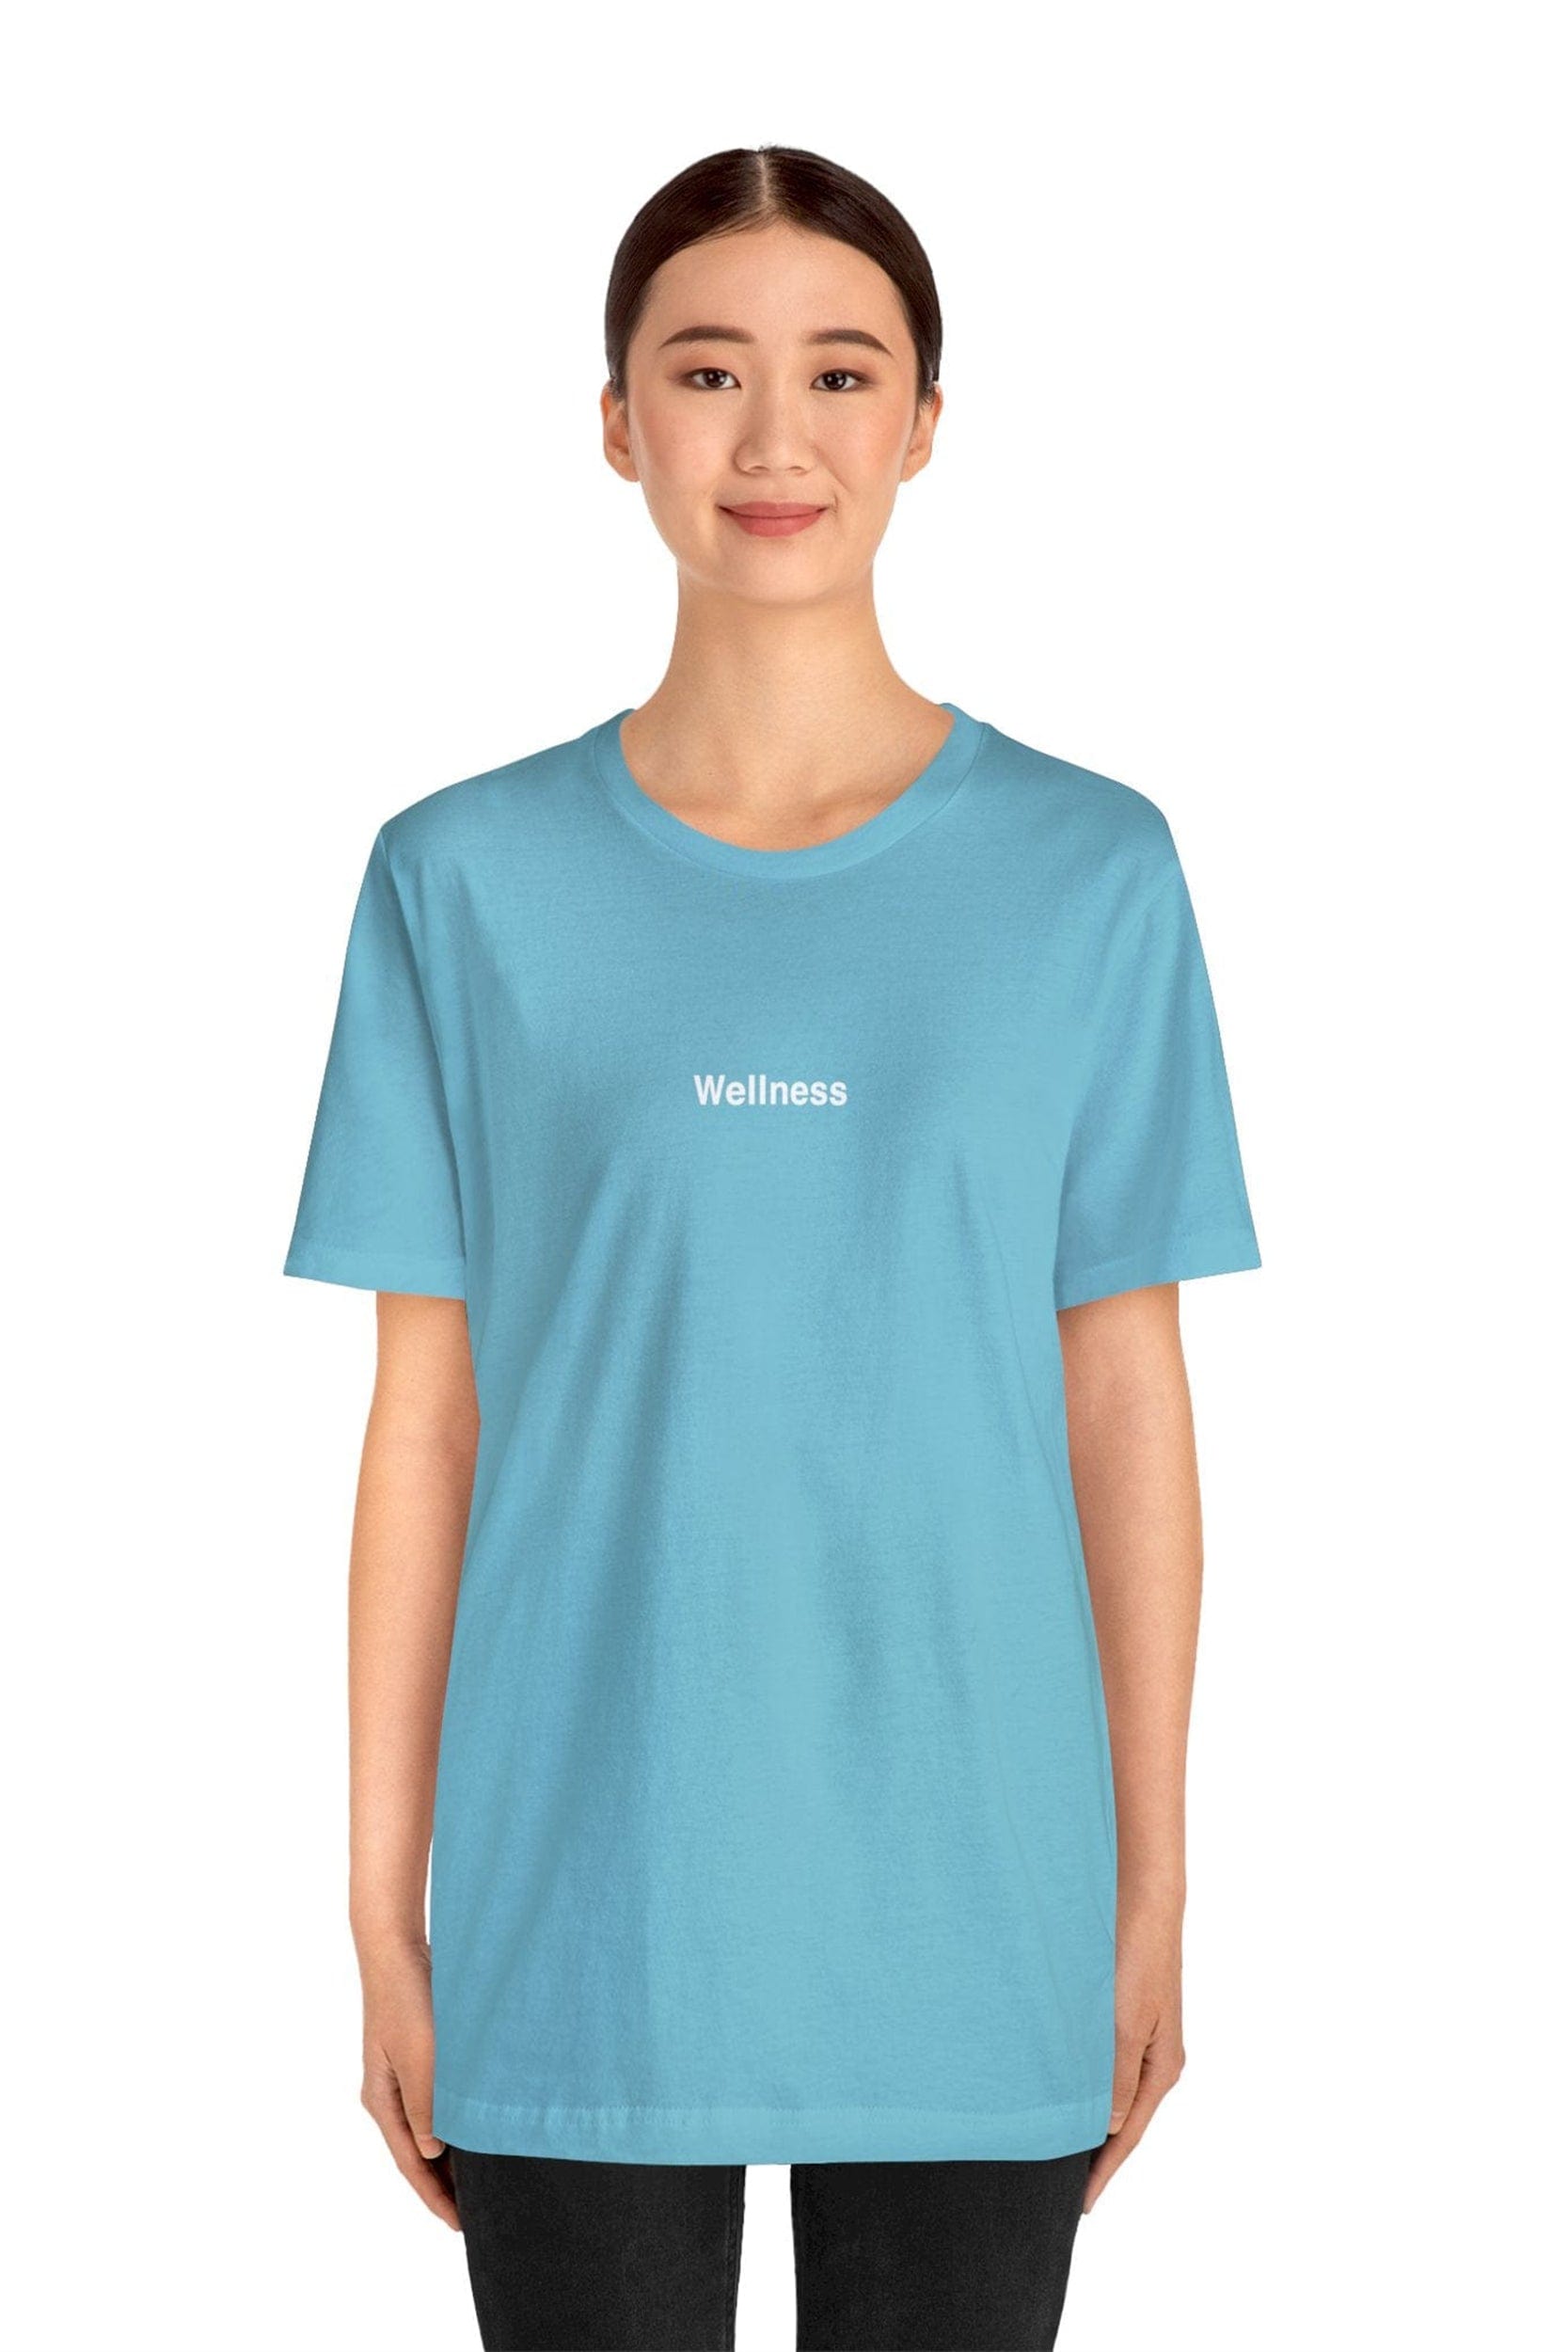 "Wellness" T-Shirt